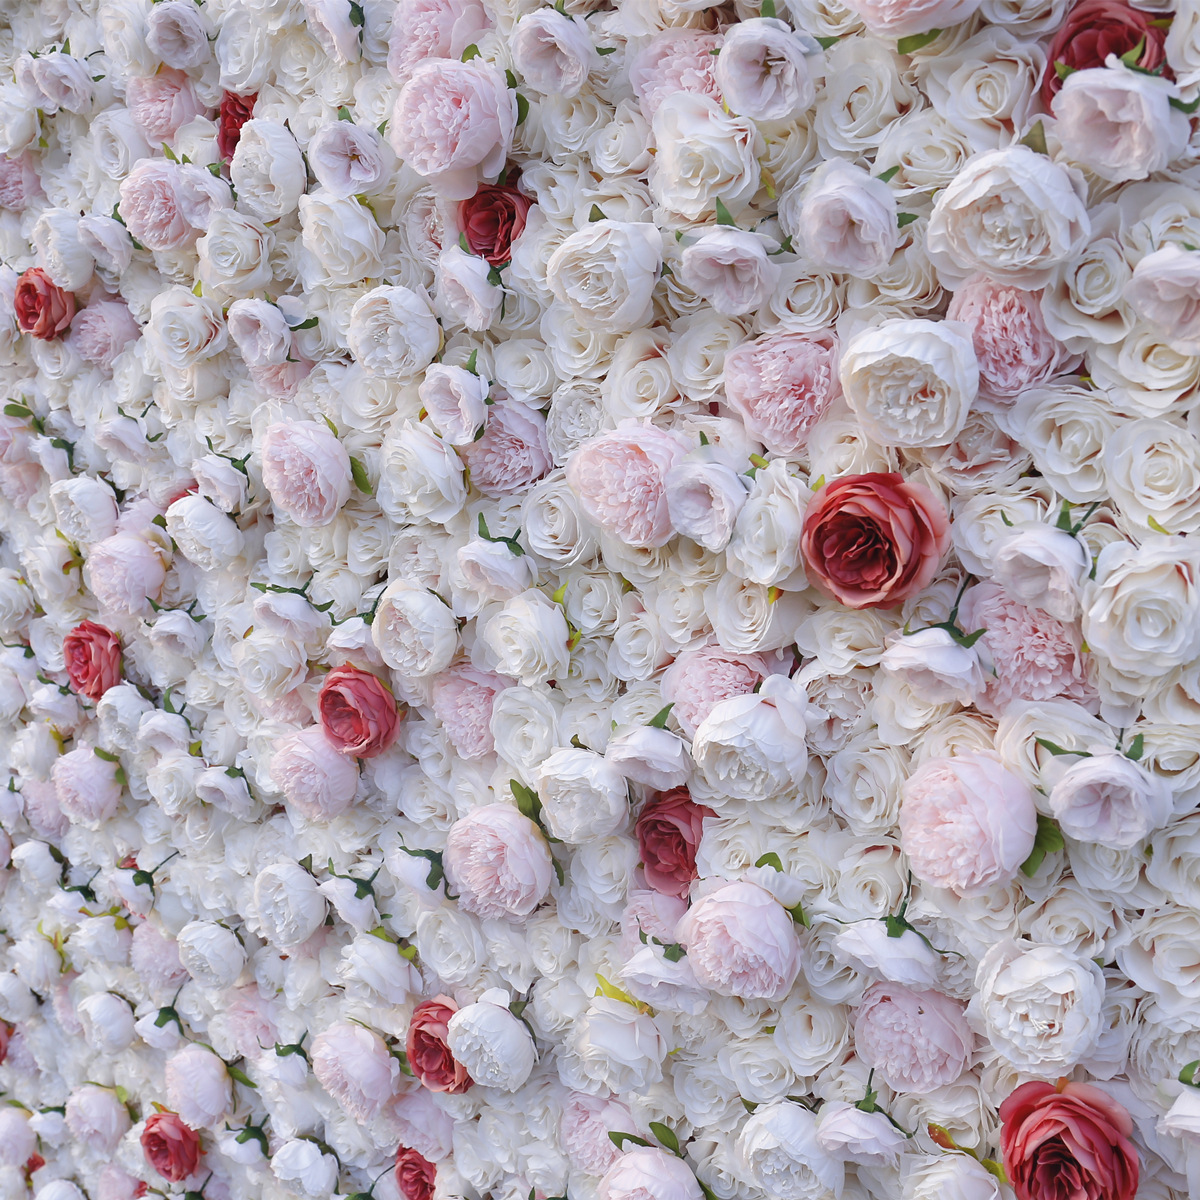  Mesterséges rózsaszín szövet alsó szimuláció virágfal esküvői dekoráció 